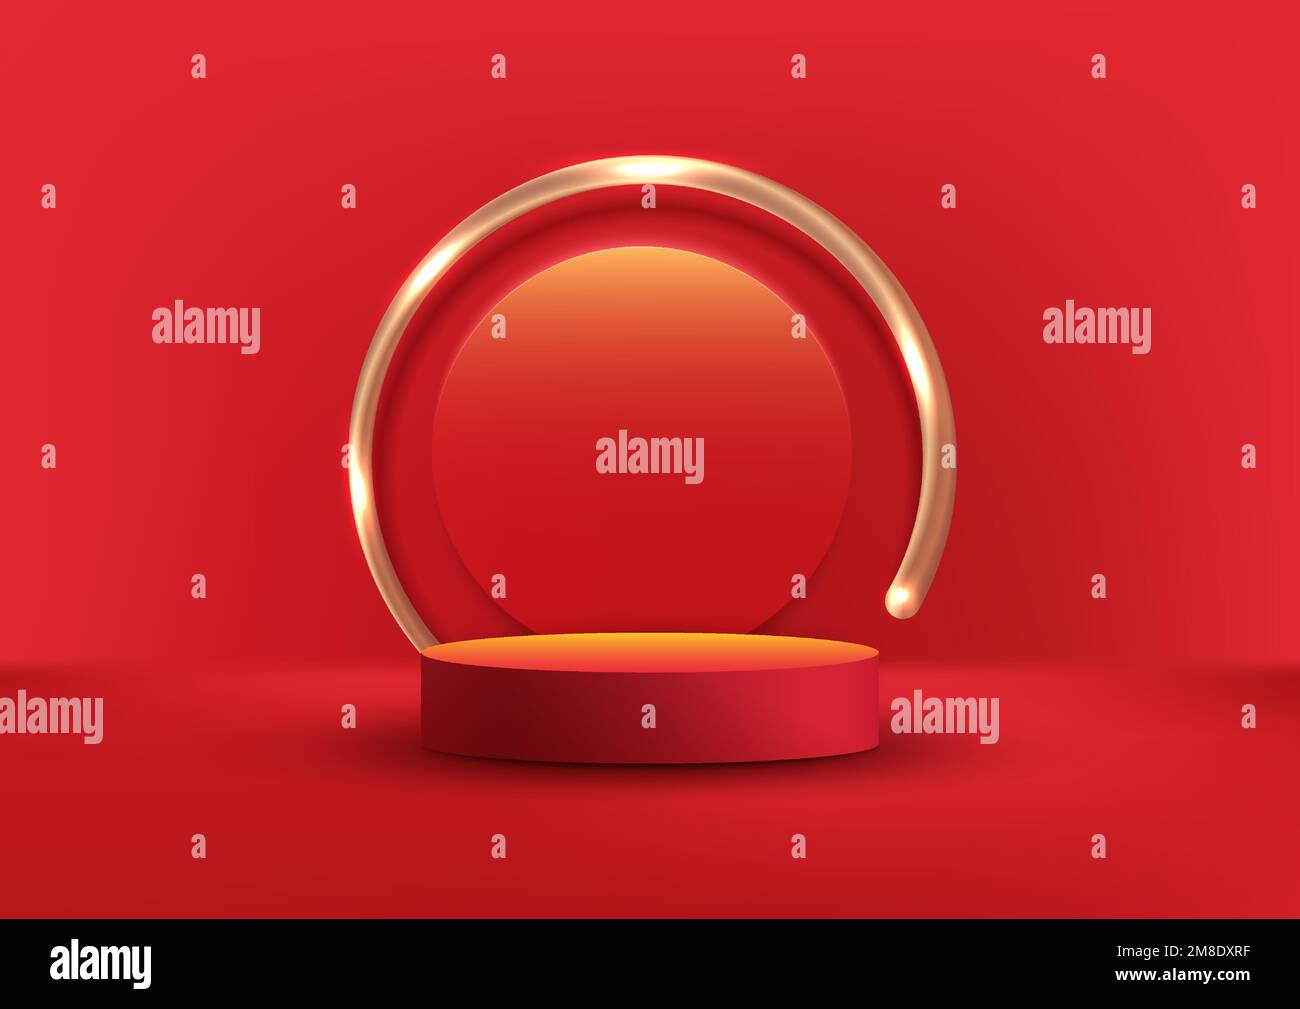 3D realistisch elegantes rotes Trommelpodium oder Standfuß mit goldfarbenem runden Hintergrund auf rotem Hintergrund moderner Luxus minimalistischer Stil. Produktdis Stock Vektor